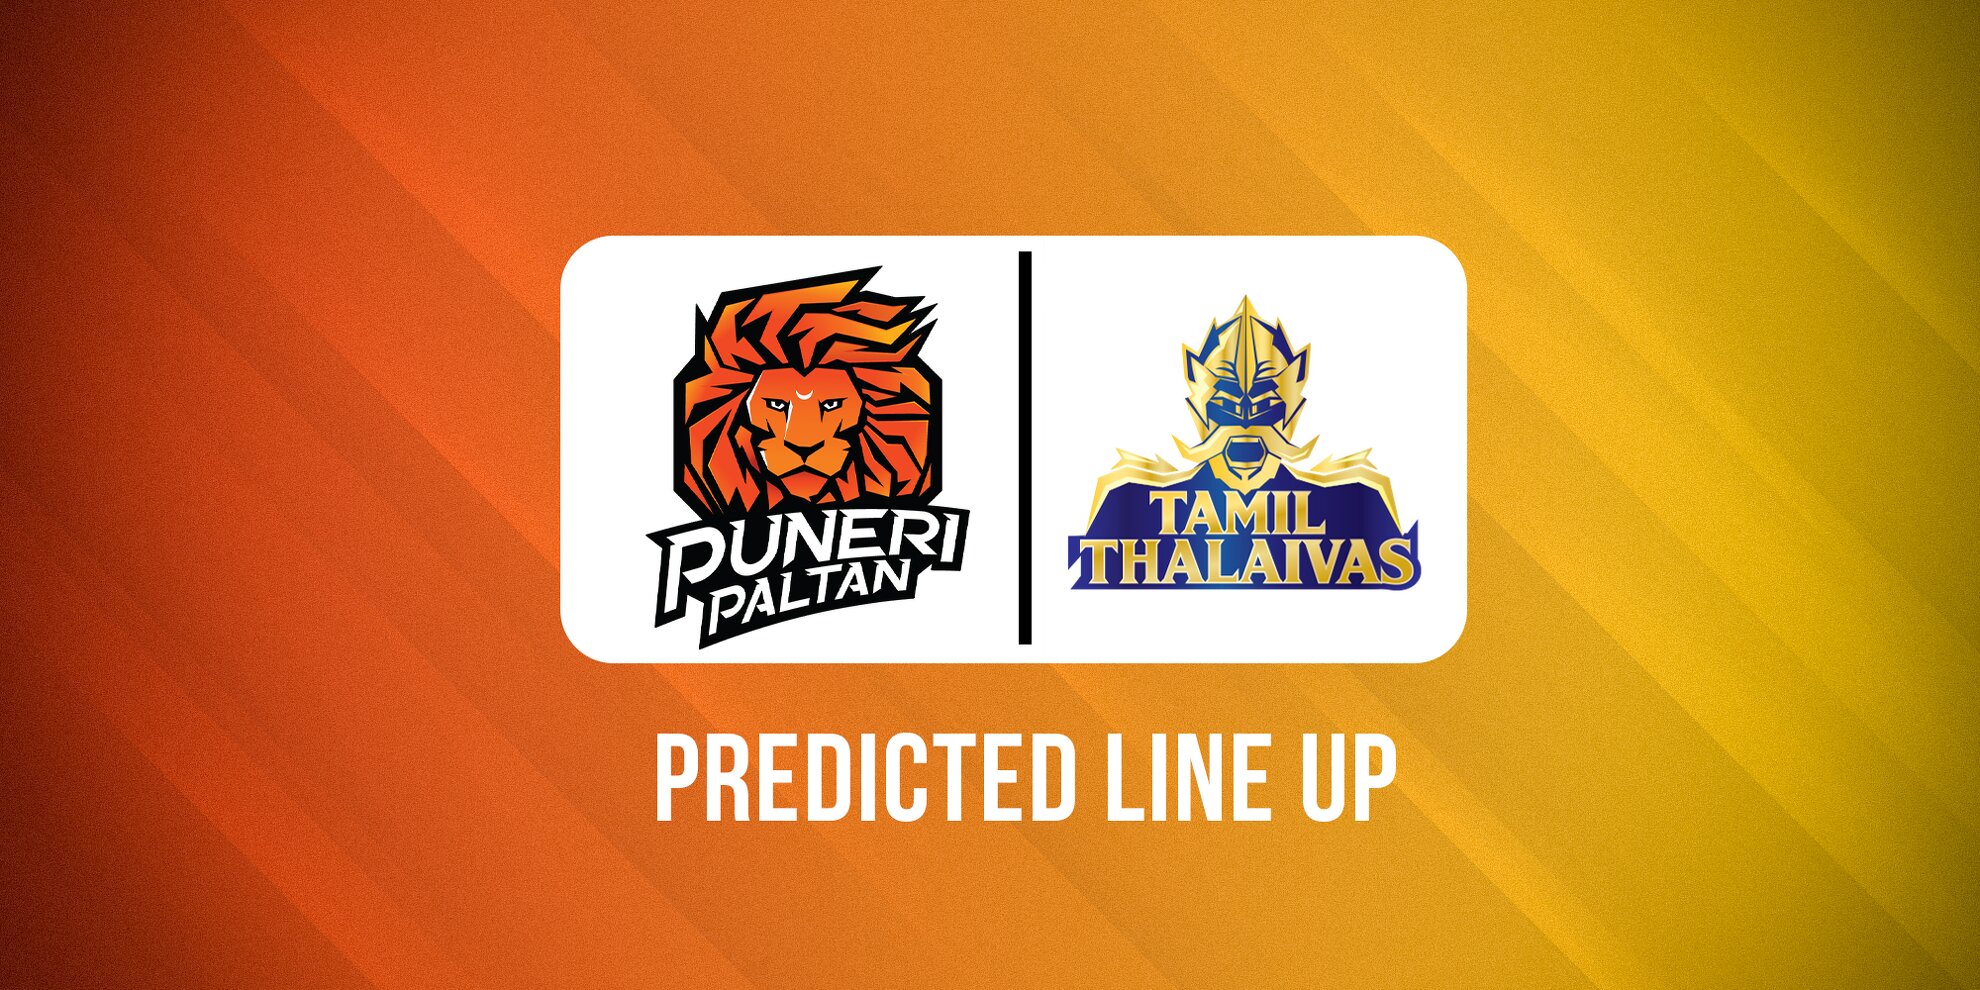 Puneri Paltan vs Tamil Thalaivas Predicted Lineups